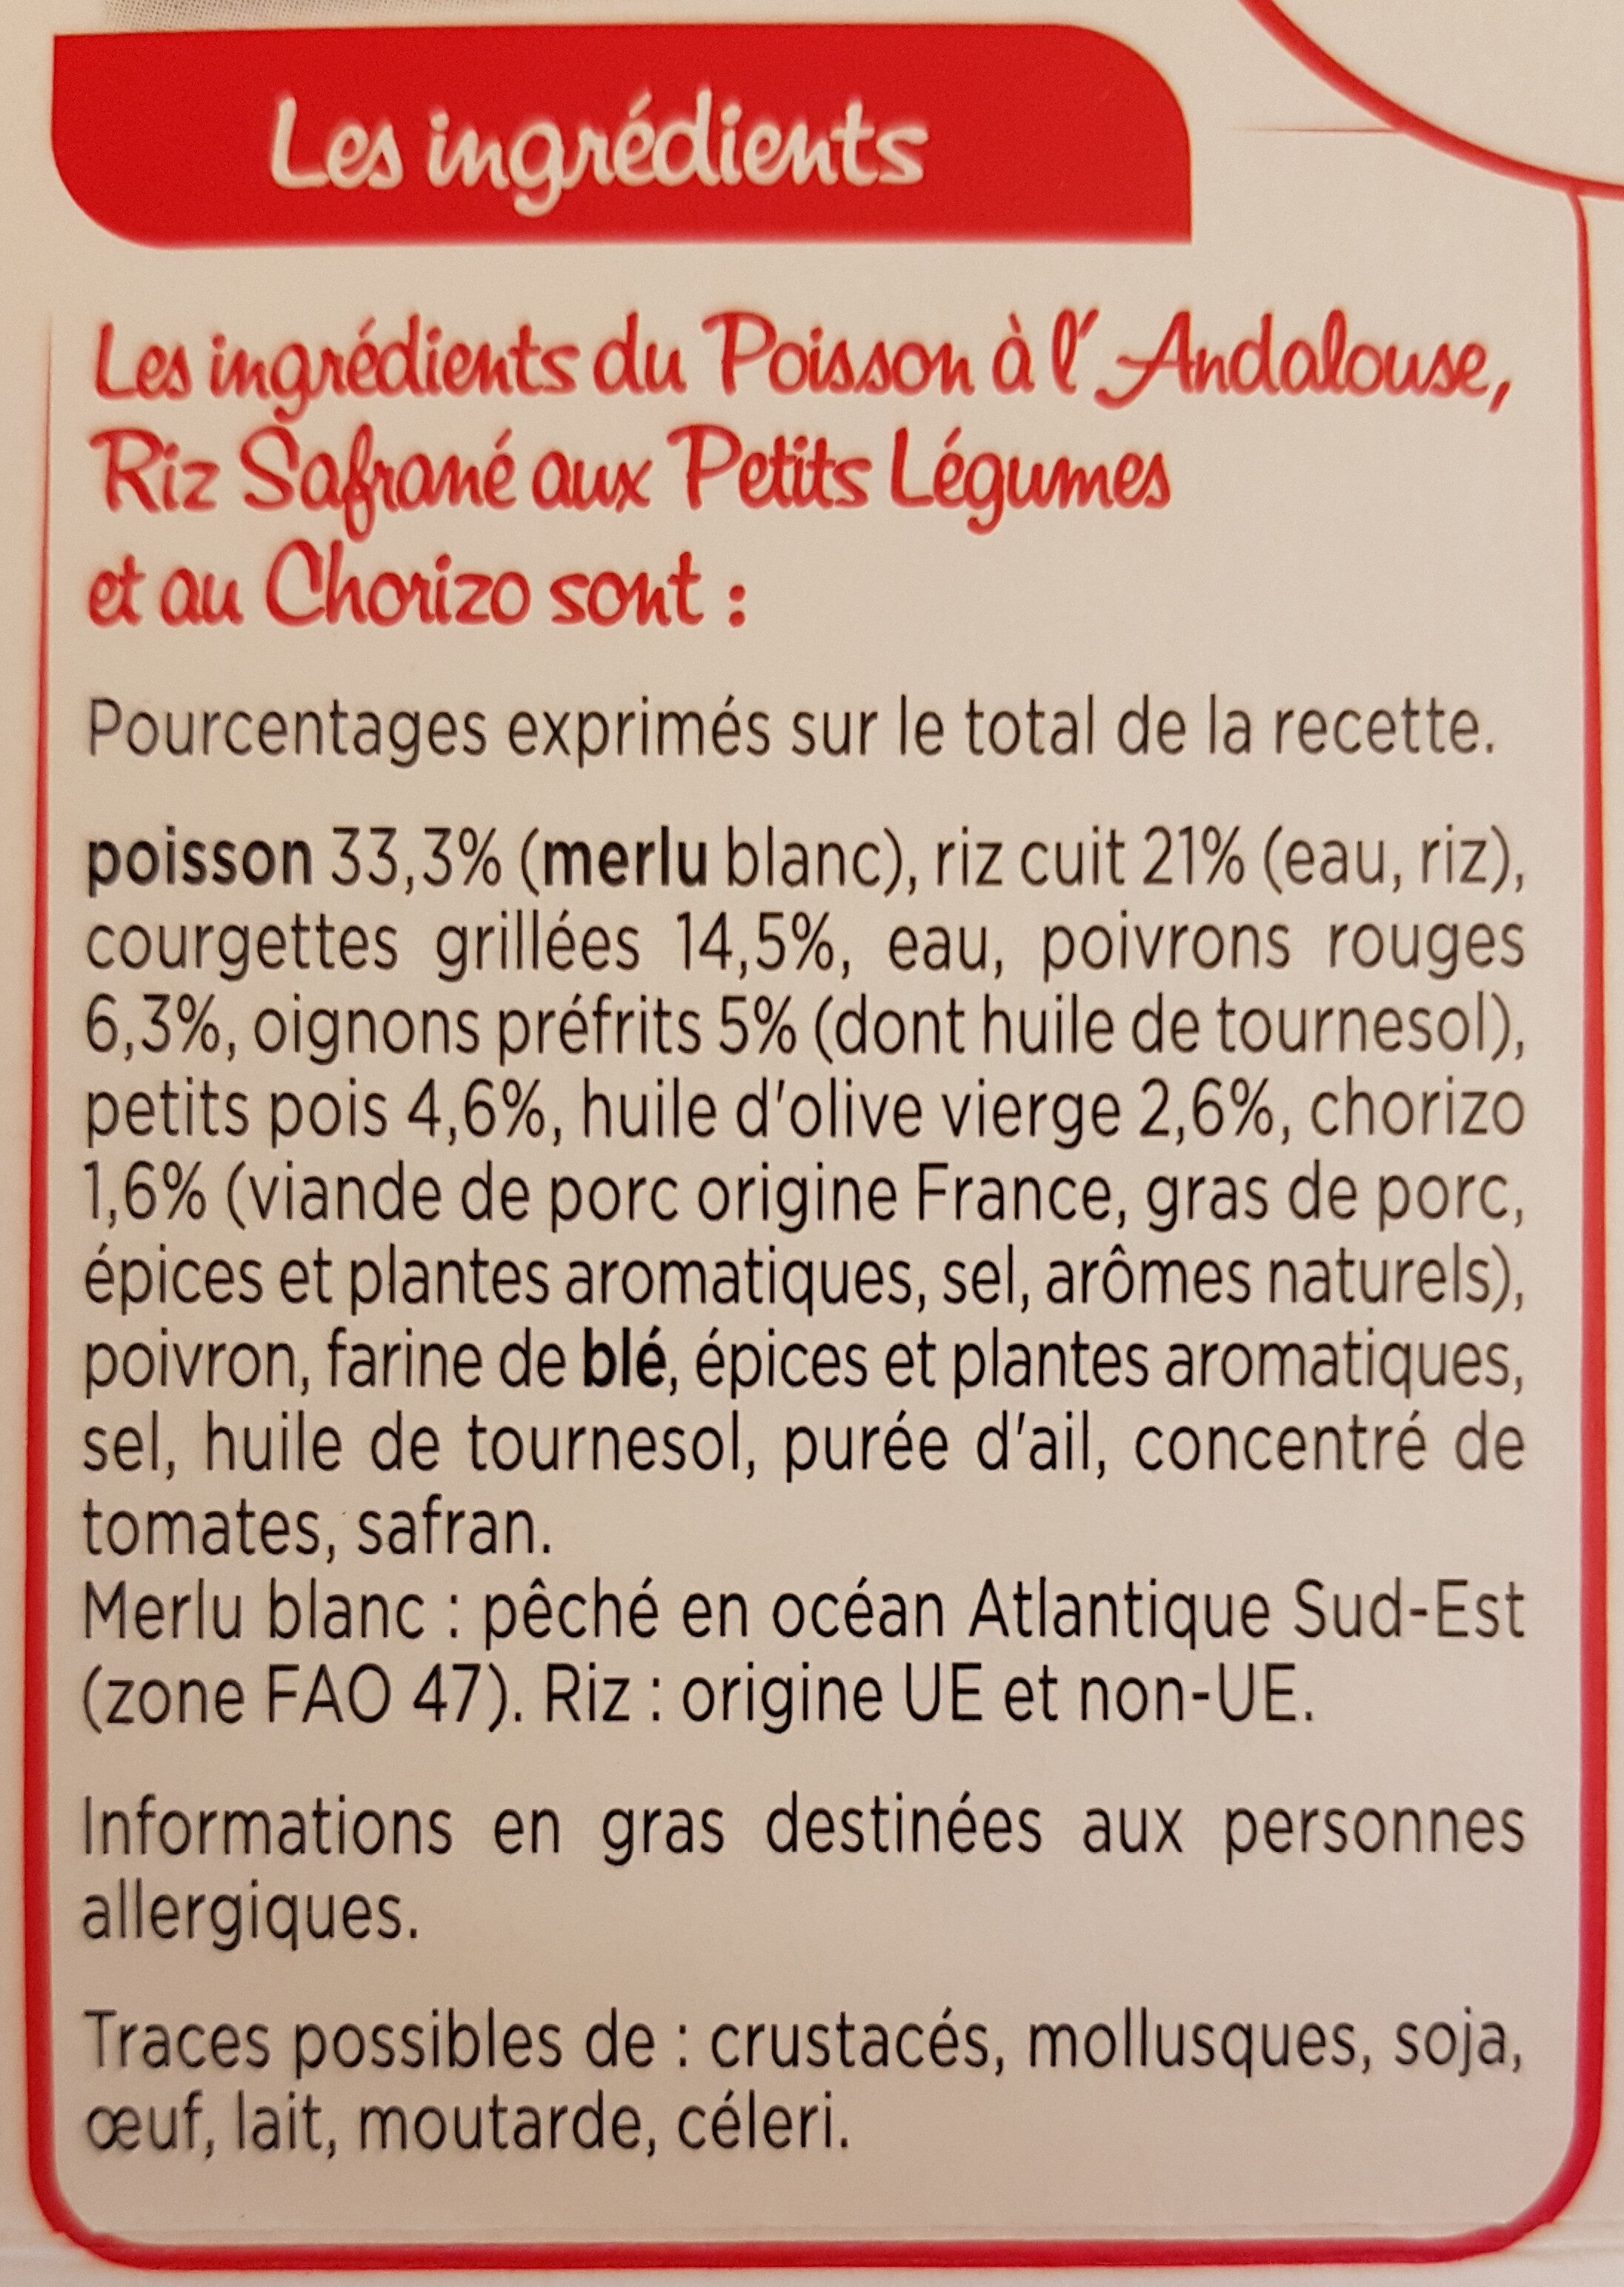 Poisson à l'andalouse riz safrané et courgettes grillées - Ingredients - fr